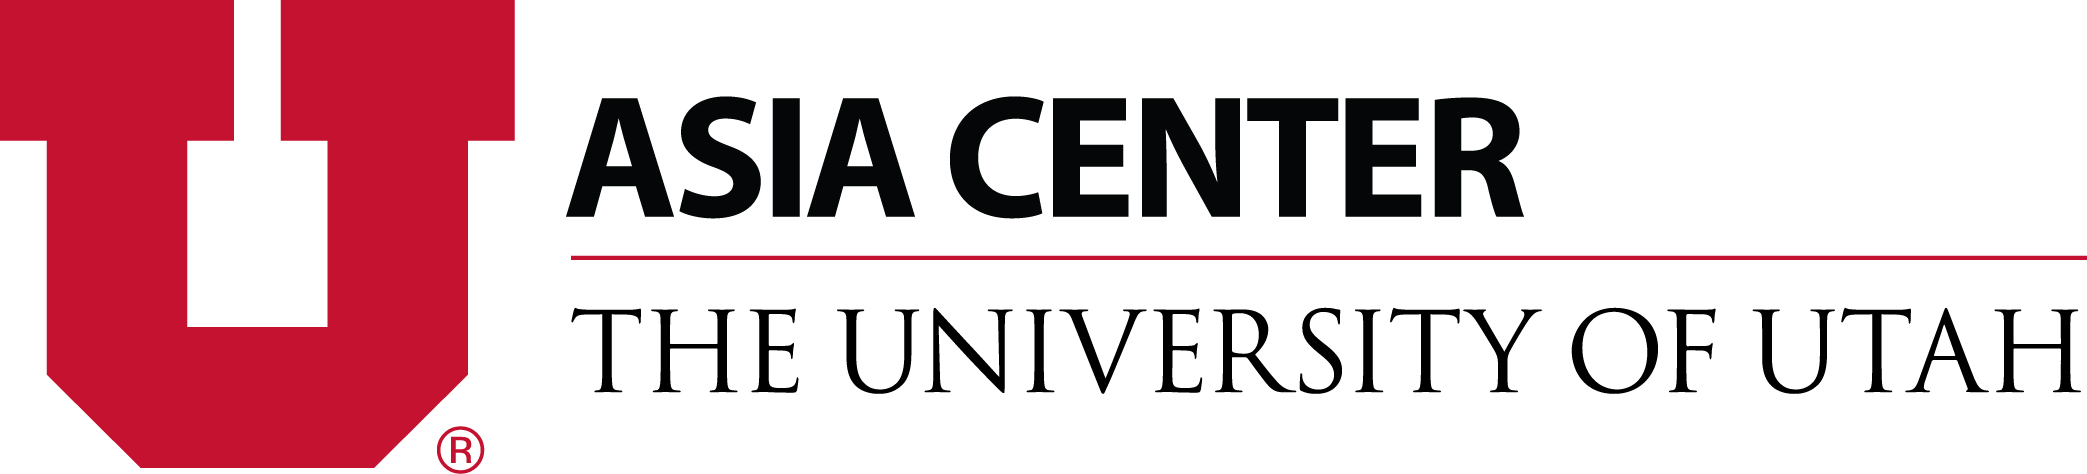 University of Utah Asia Center Logo